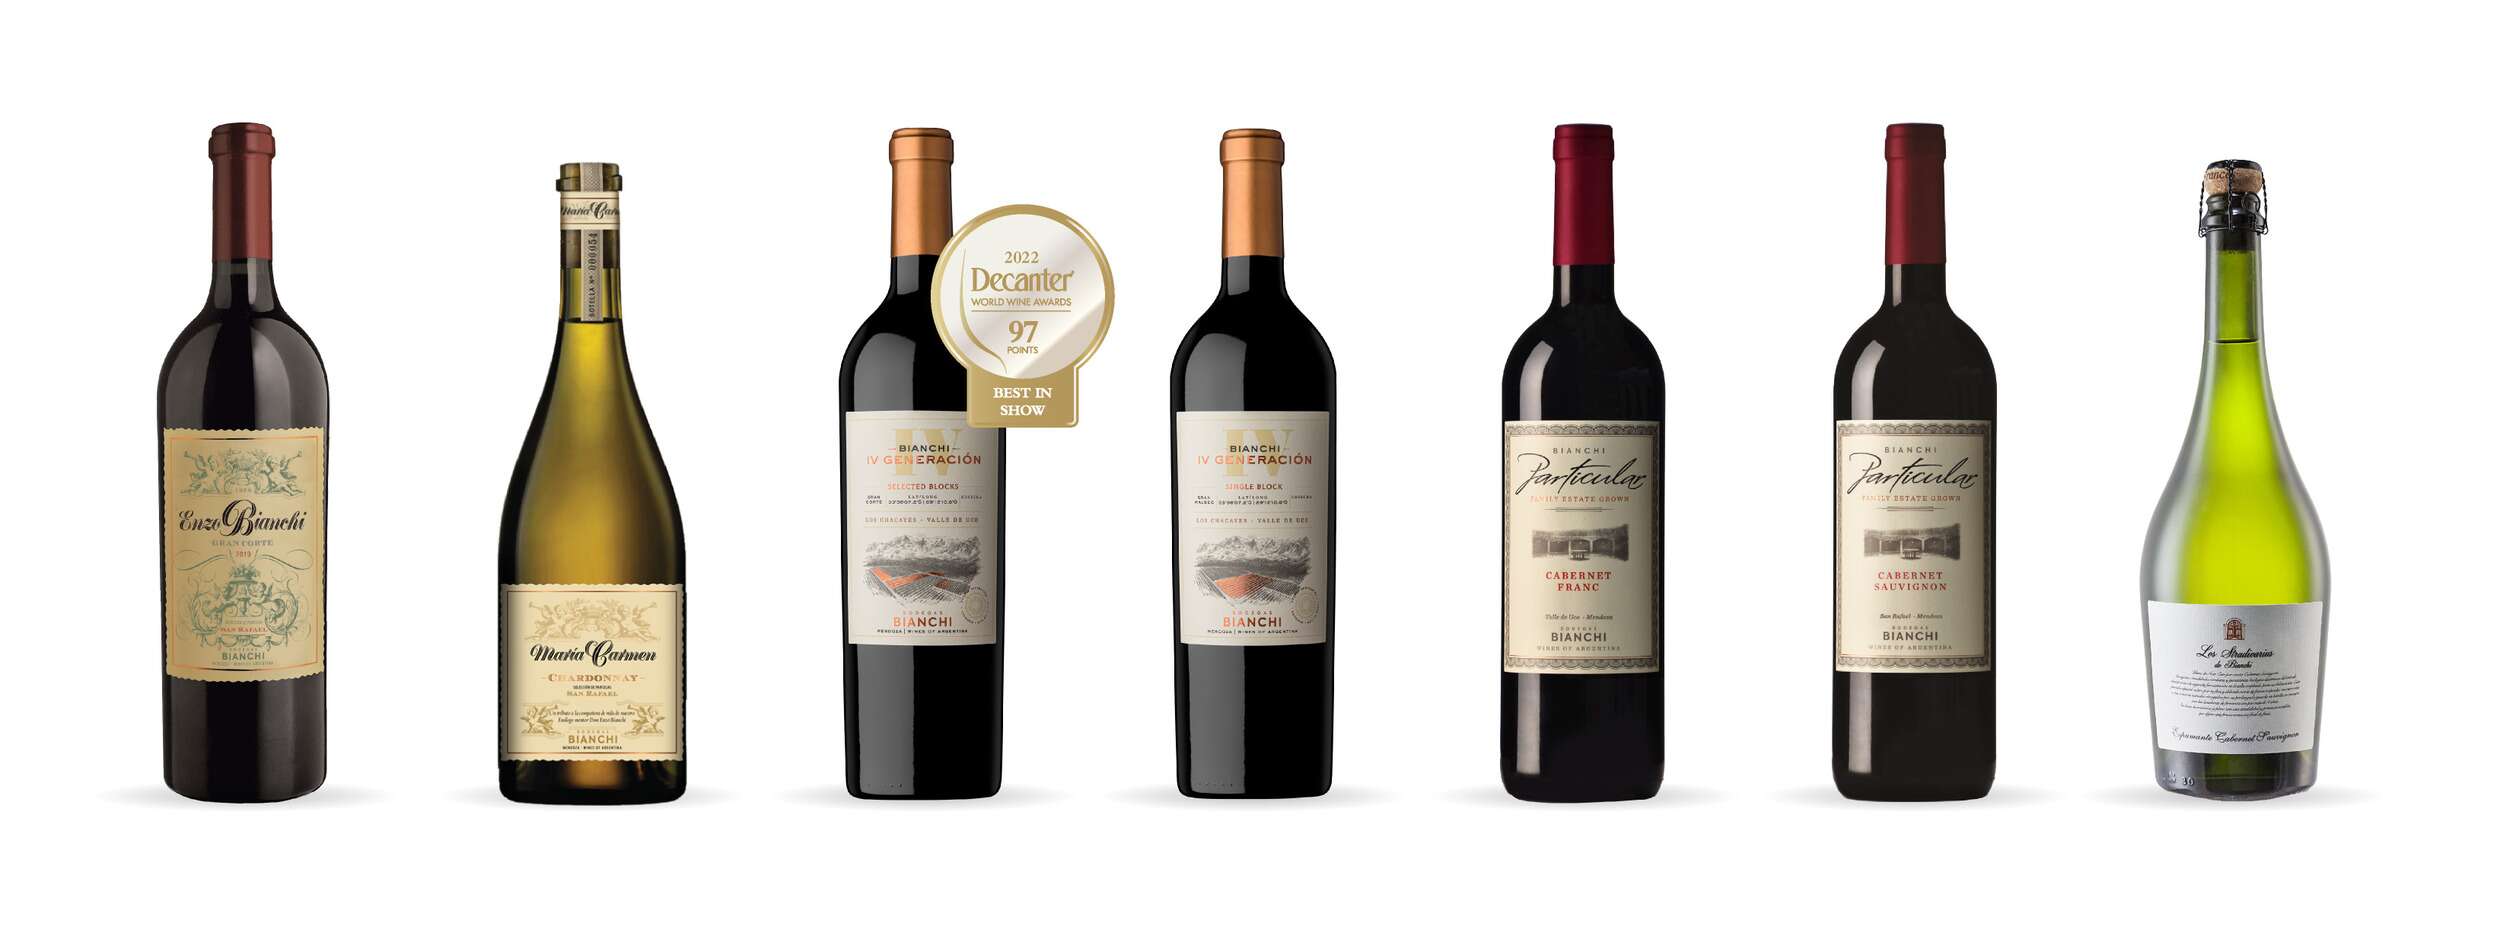 Bodegas Bianchi presenta las nuevas añadas de sus vinos íconos (1)